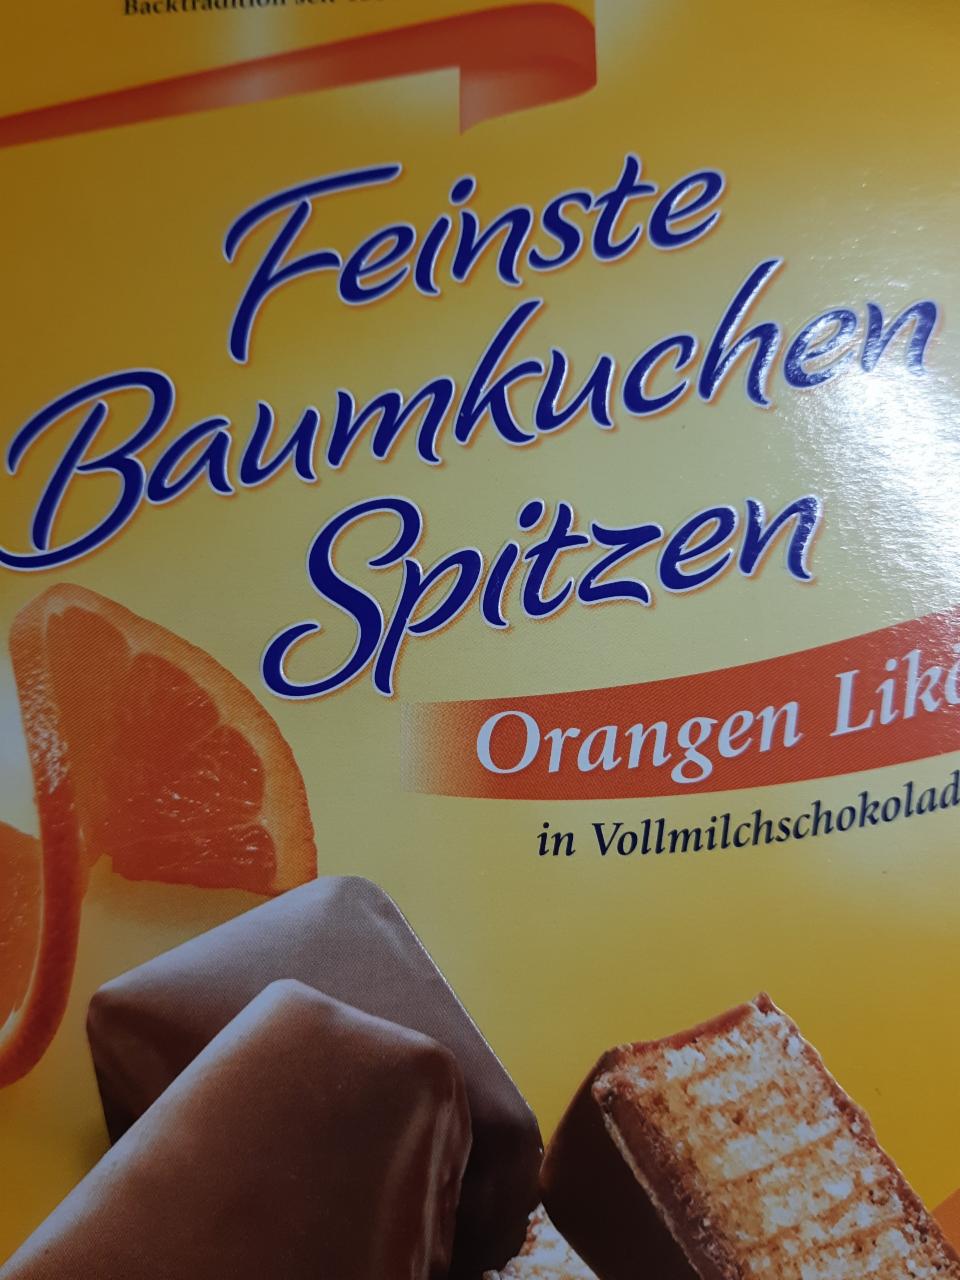 Fotografie - Feinste Baumkuchenspitzen Orangen Likör Kuchenmeister